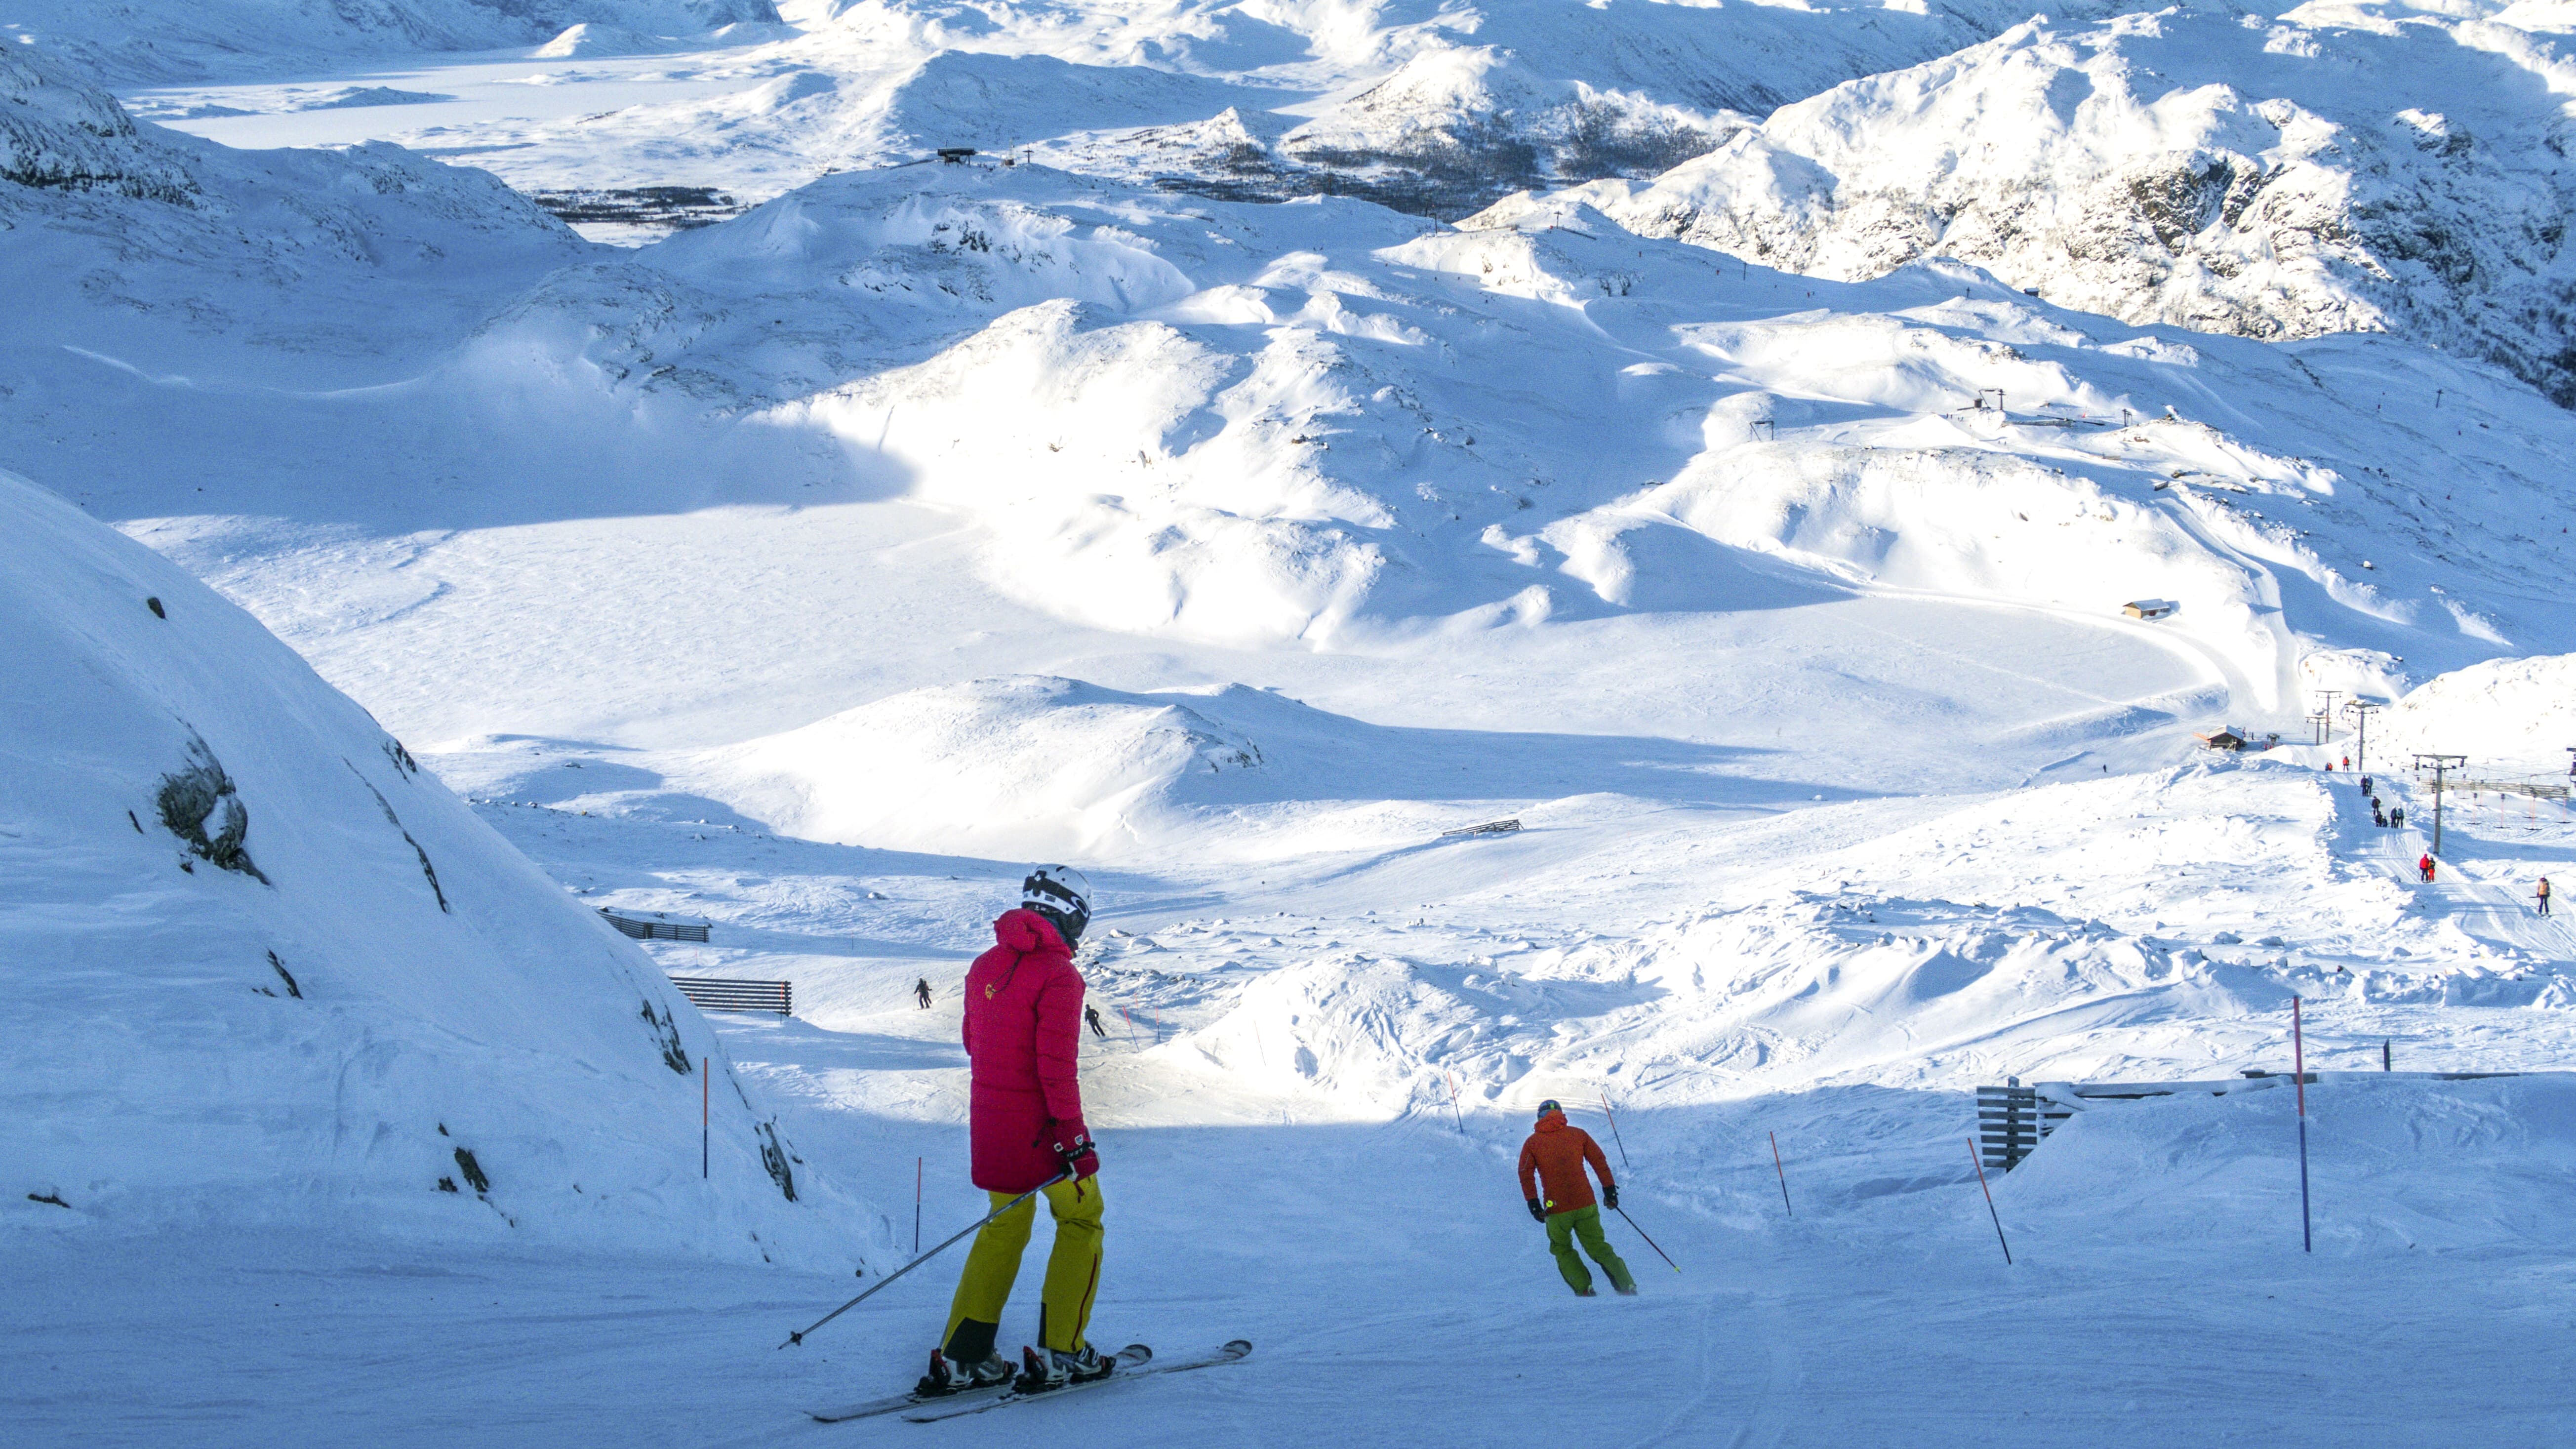 Skimate - Transportez votre matériel de ski en toute simplicité ! – SkiMate